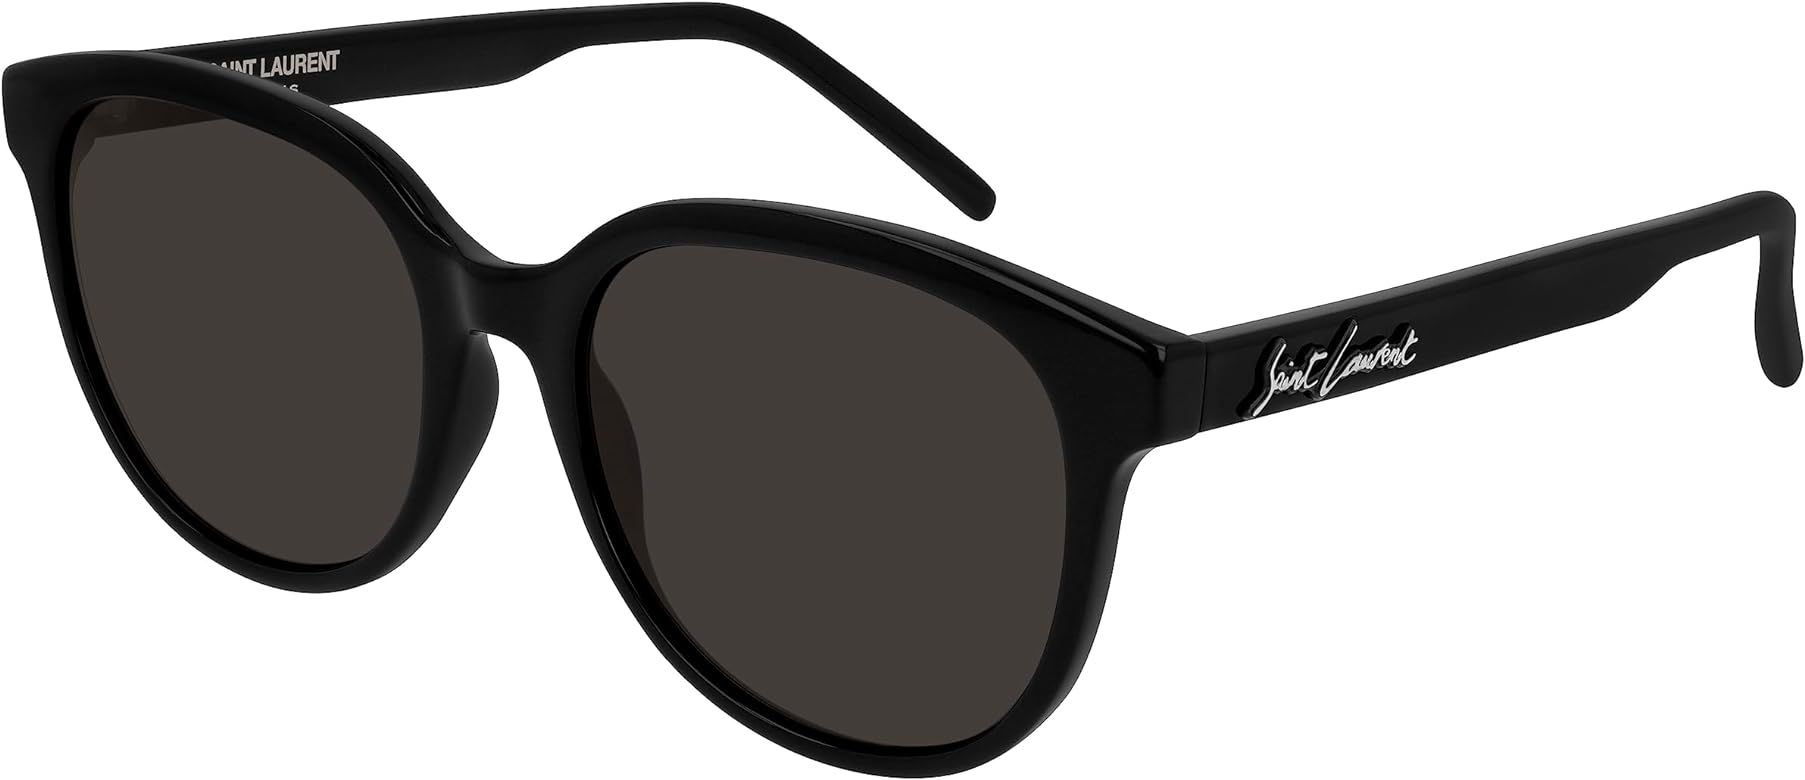 SAINT LAURENT Women's Signature Round Sunglasses | Amazon (US)